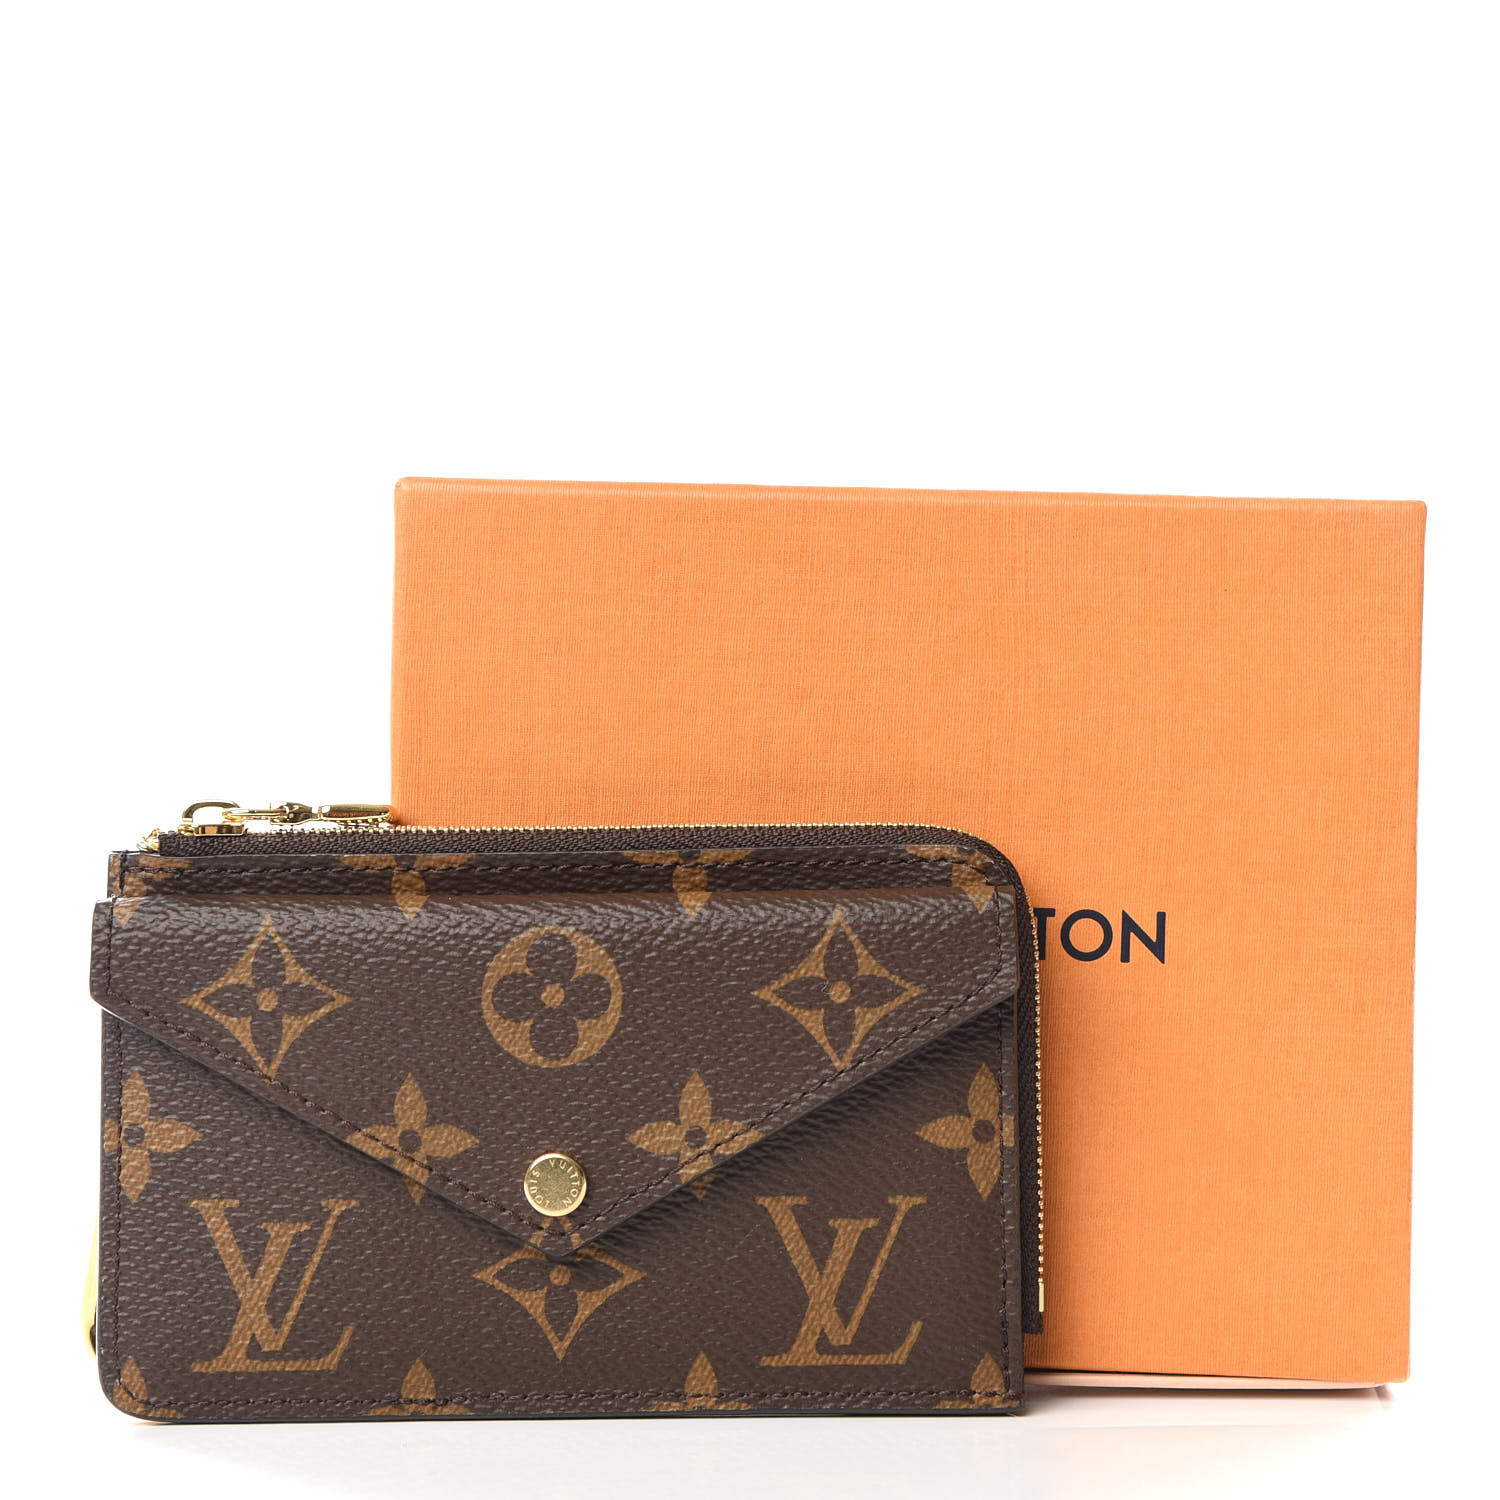 Louis Vuitton Recto Verso Navy Monogram Empreinte Leather